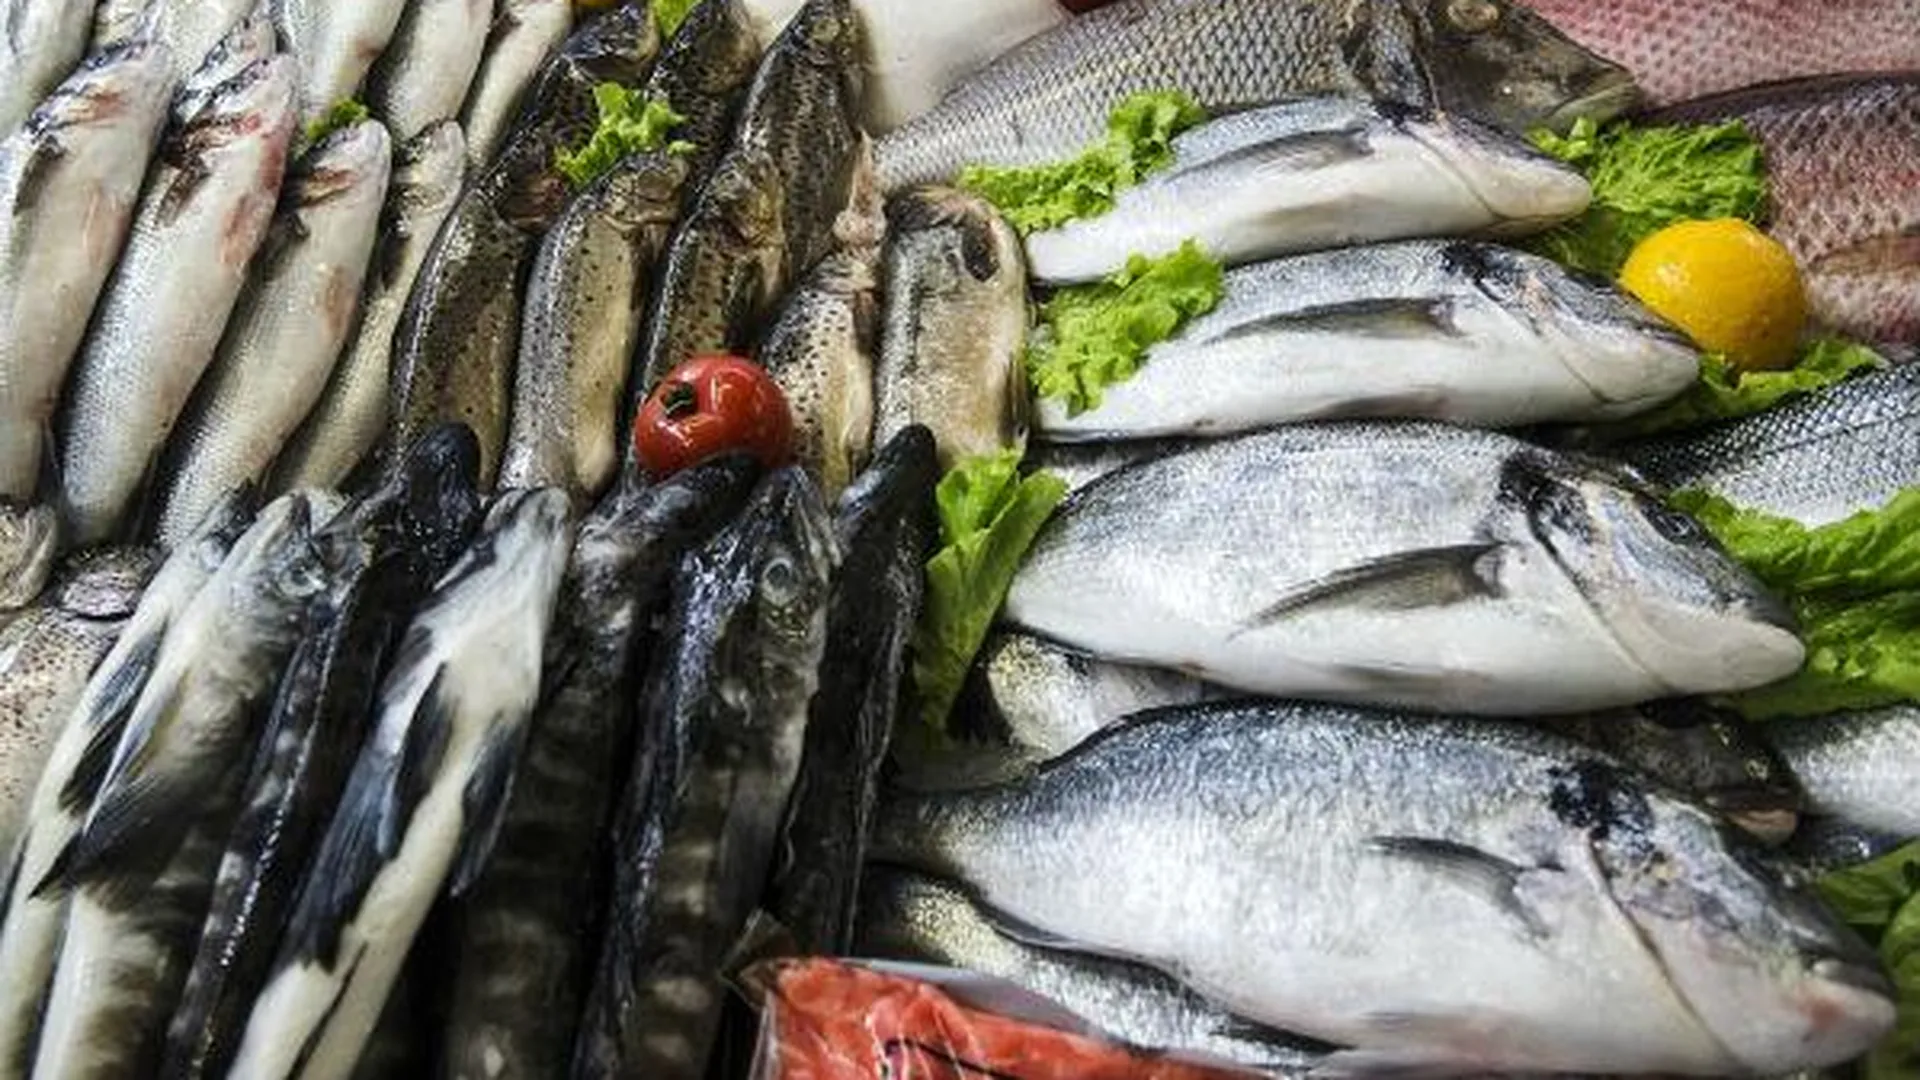 Около 14,5 тонны турецкой рыбы задержали на складе в Подмосковье